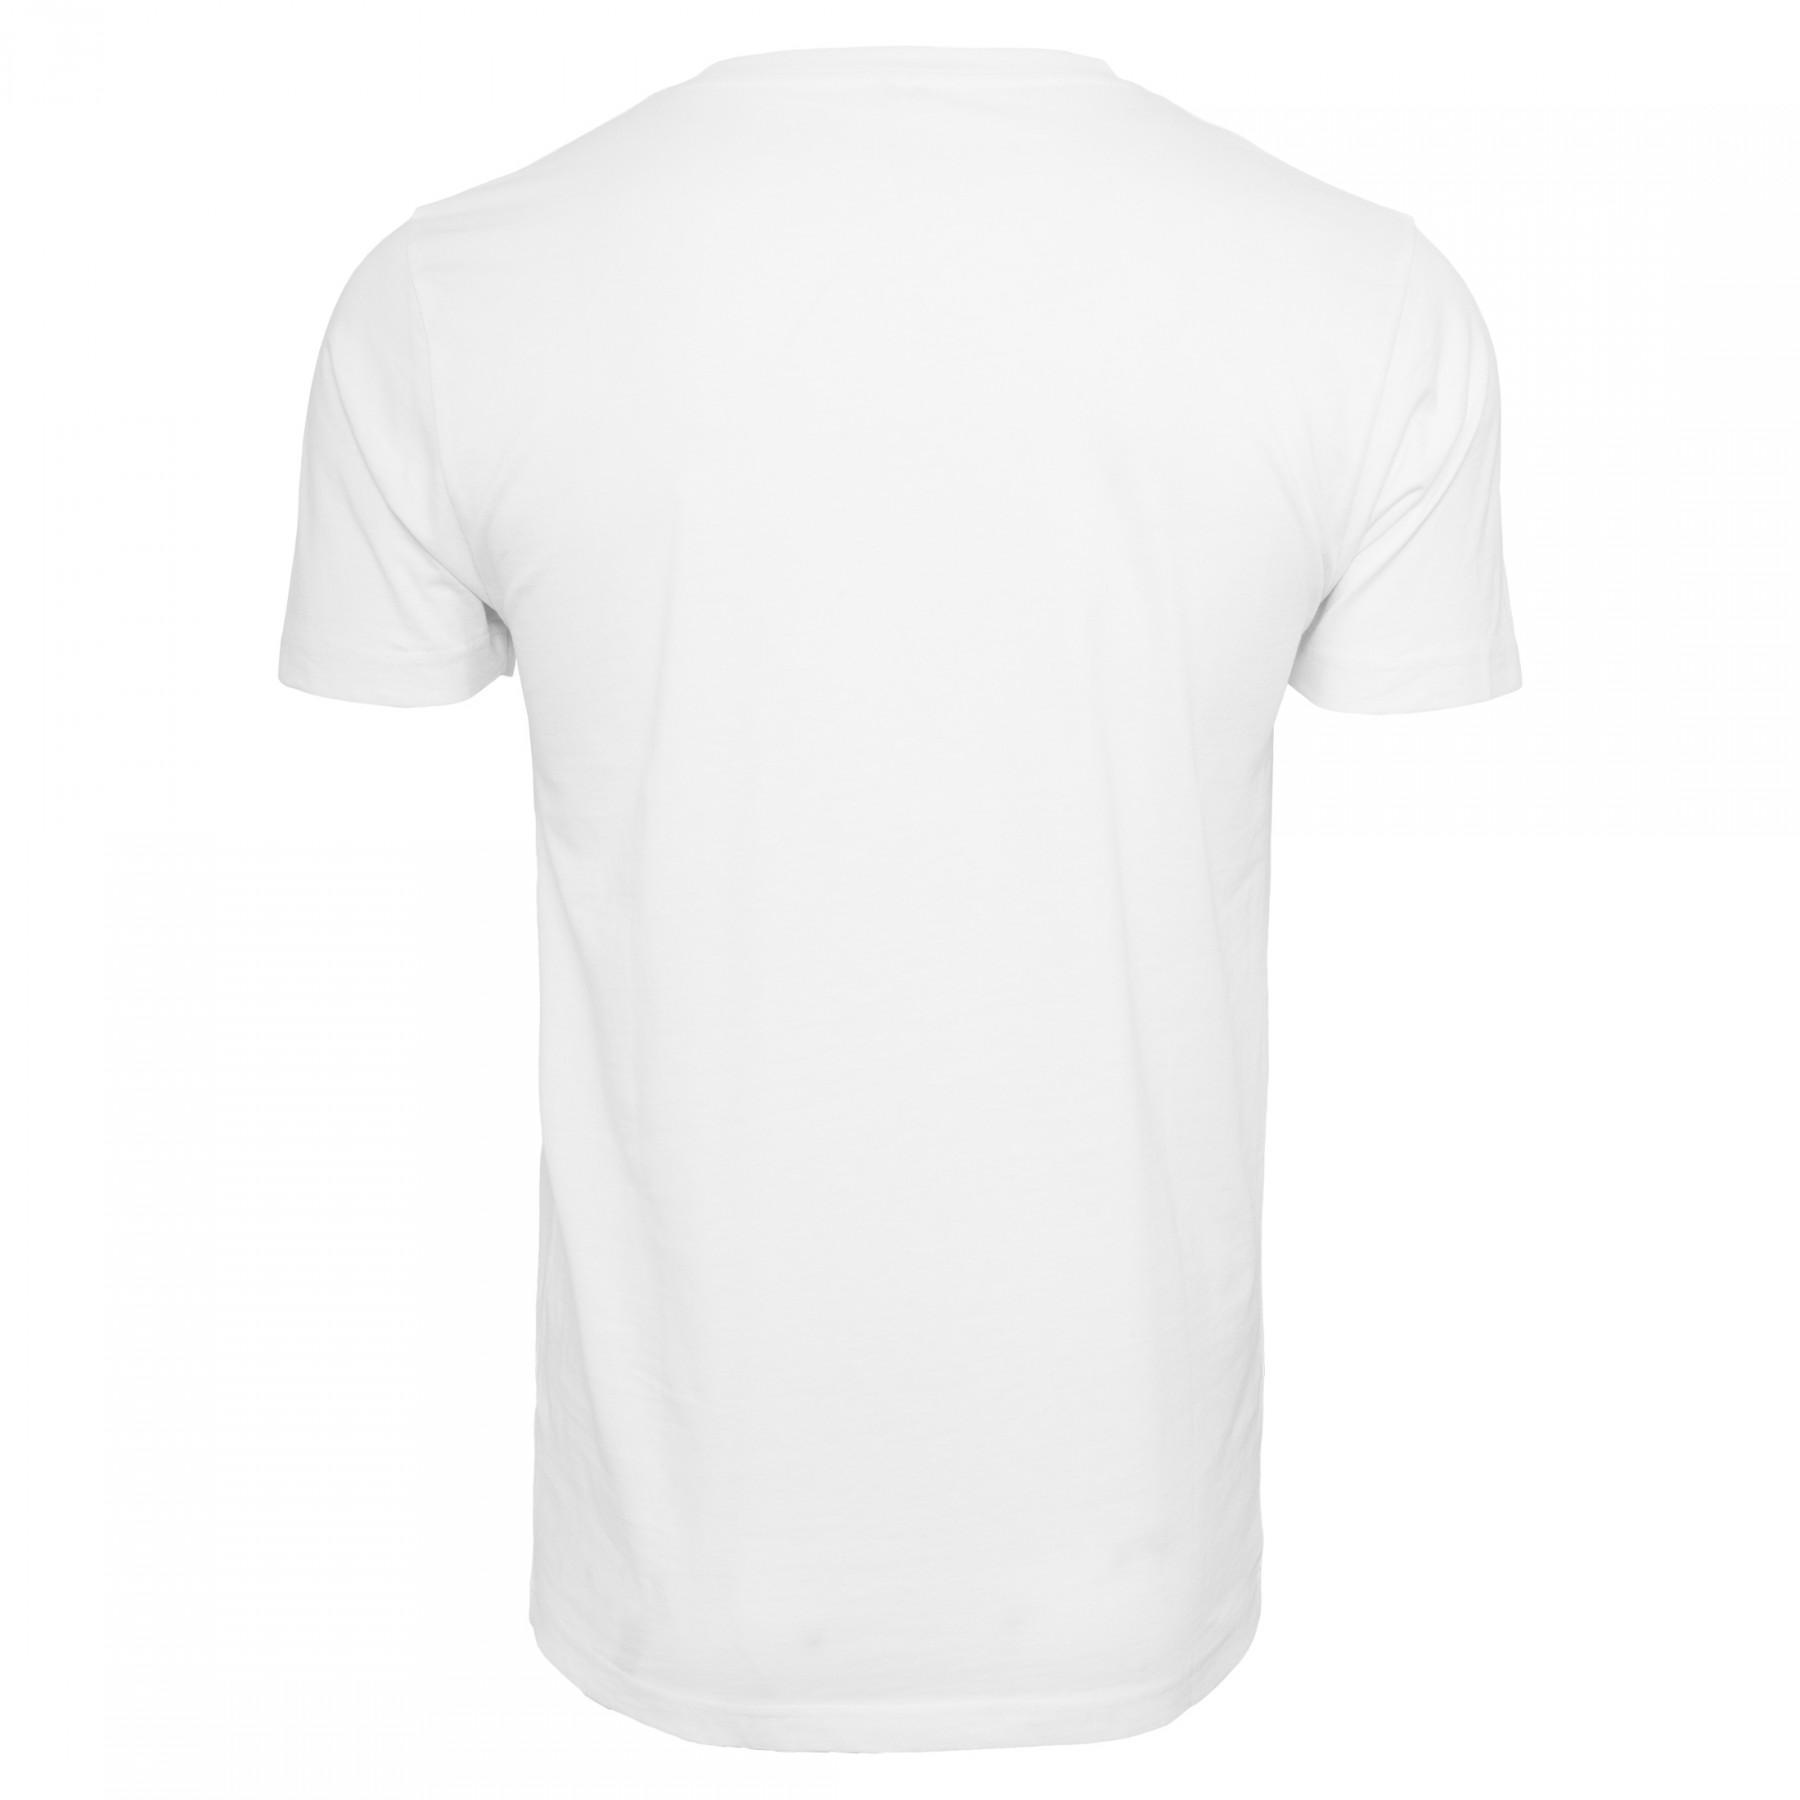 Camiseta Mister Tee tupac profile